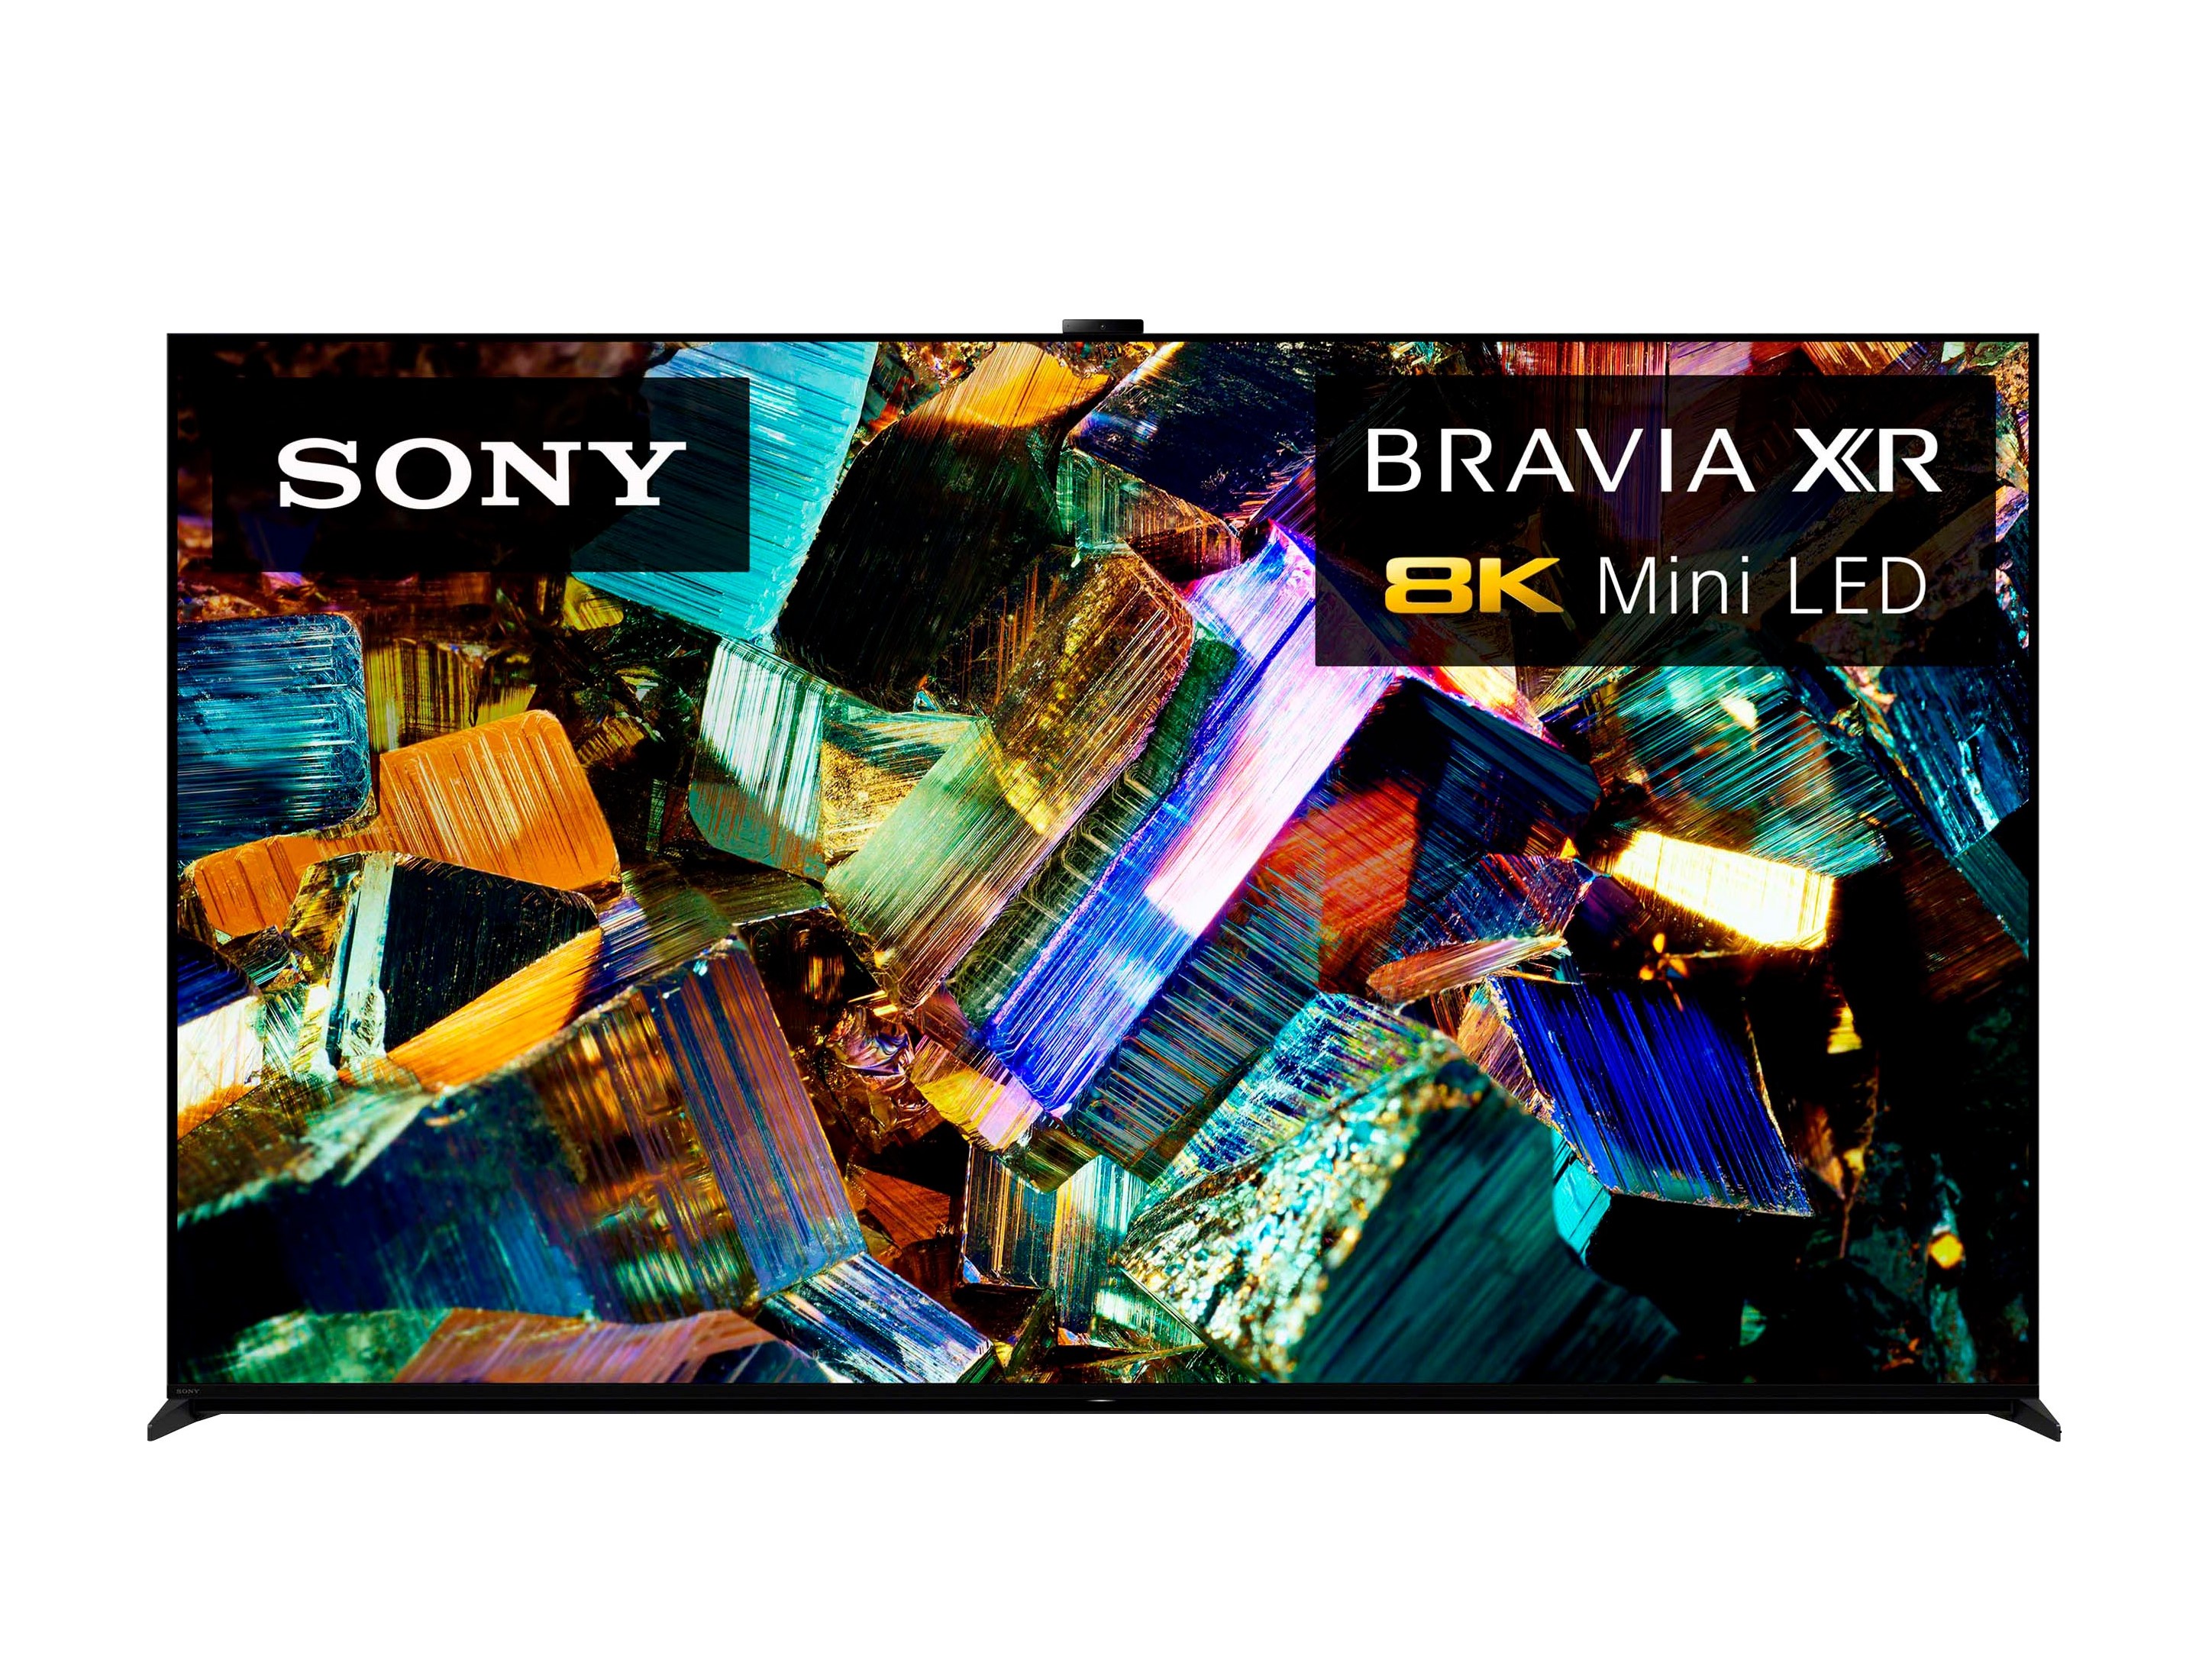 Sony 85 Class BRAVIA XR Z9K 8K HDR mini LED imagem do produto Google TV inteligente.